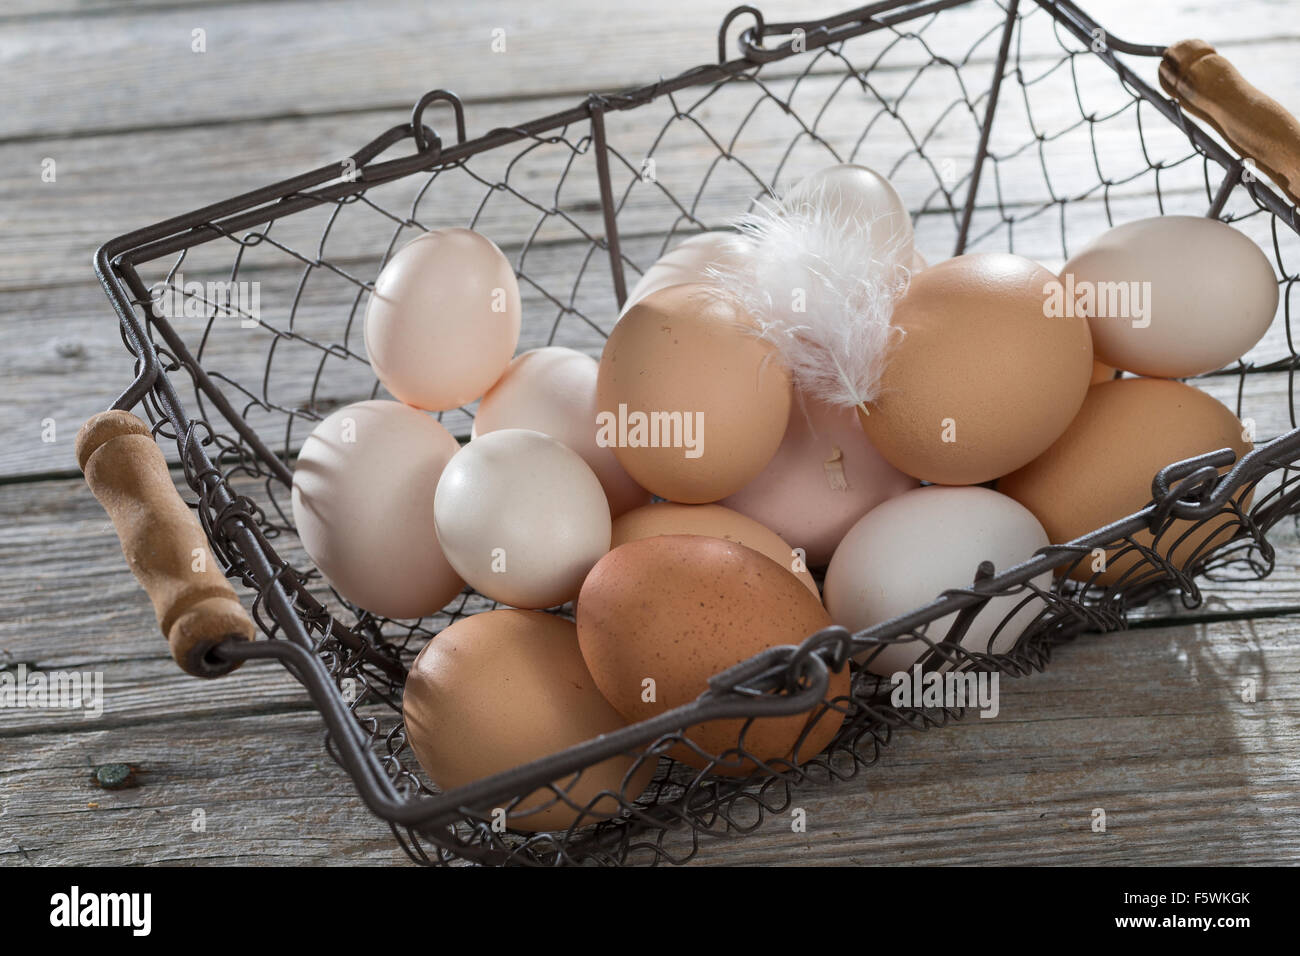 Hen's egg, hen's eggs, Hühnereier, Hühnerei, Eier, Ei, glückliche Eier, freilaufende Hühner, Bioeier, Zwerghuhn, Zwerghühner Stock Photo